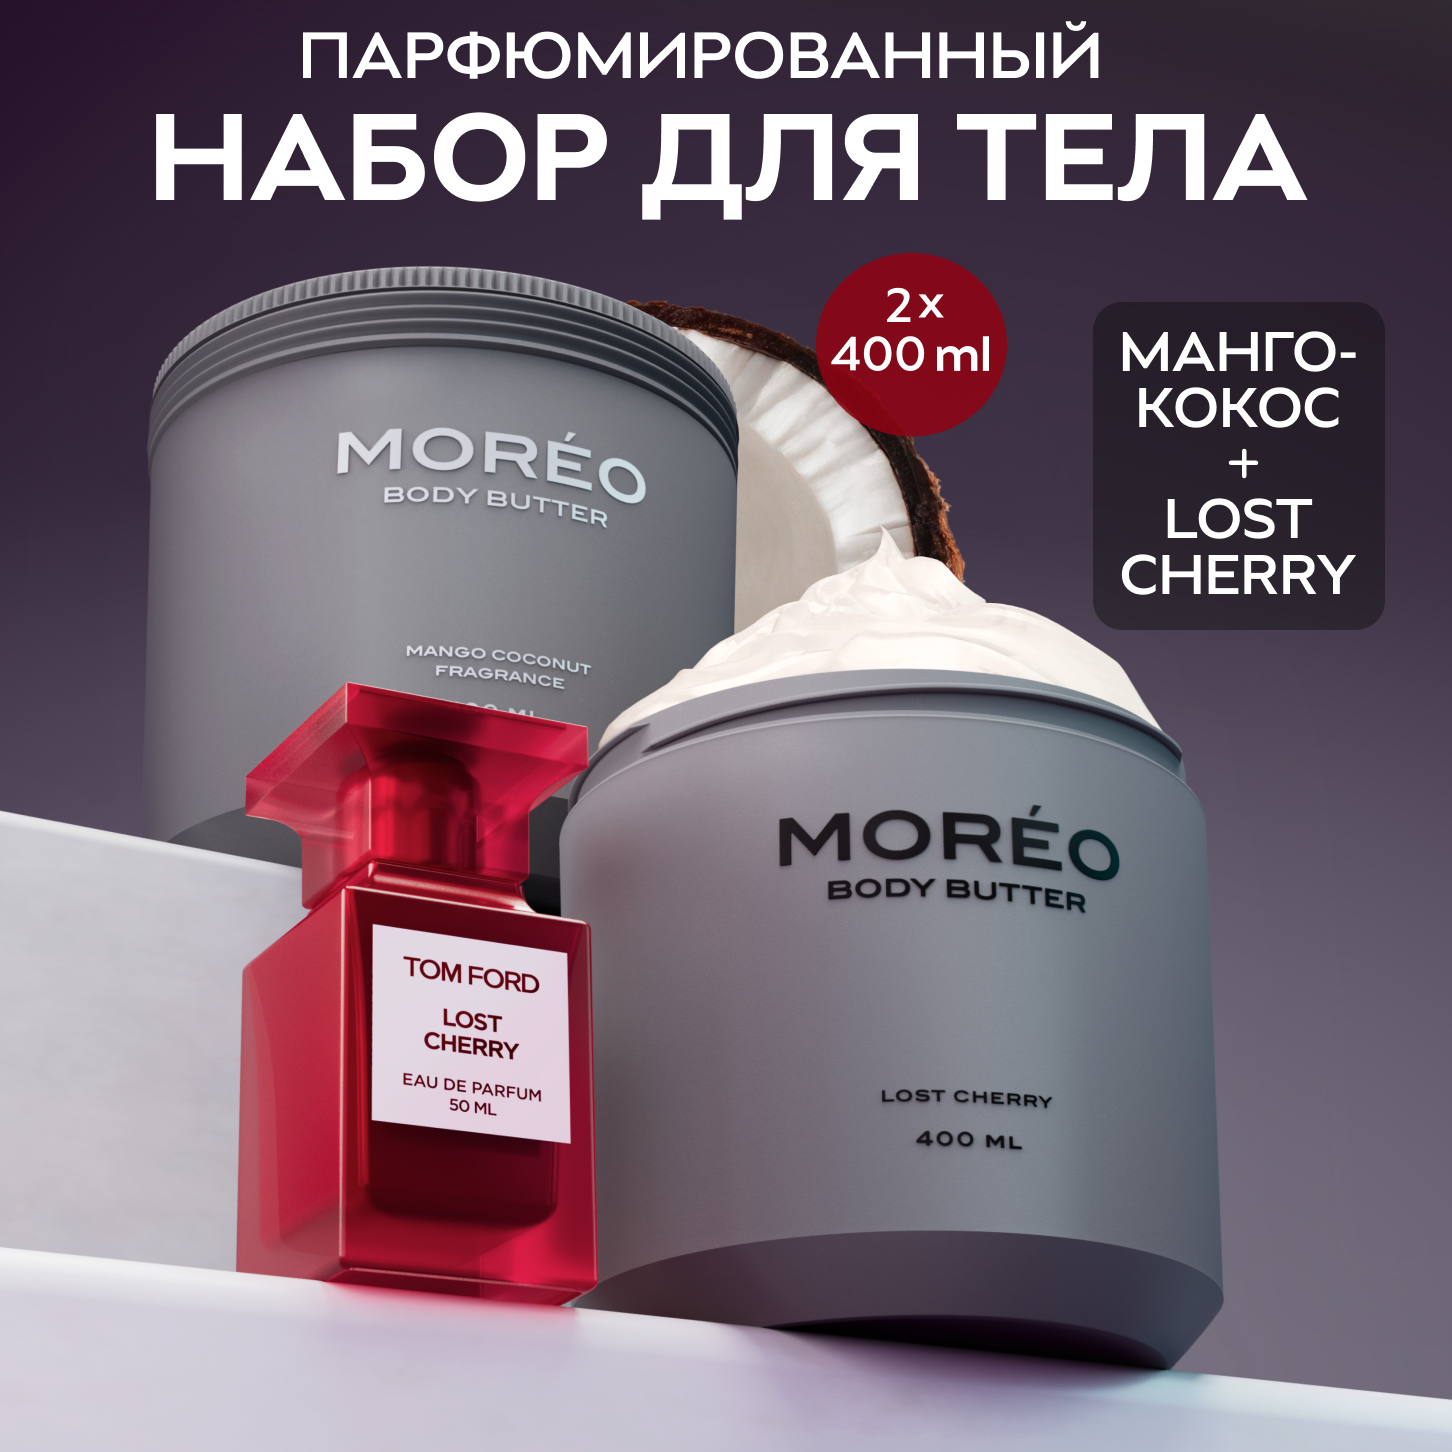 Набор кремов для тела MOREO, 400 мл х 2 шт, аромат вишня, аромат манго-кокос, набор кремов для тела парфюмированный.